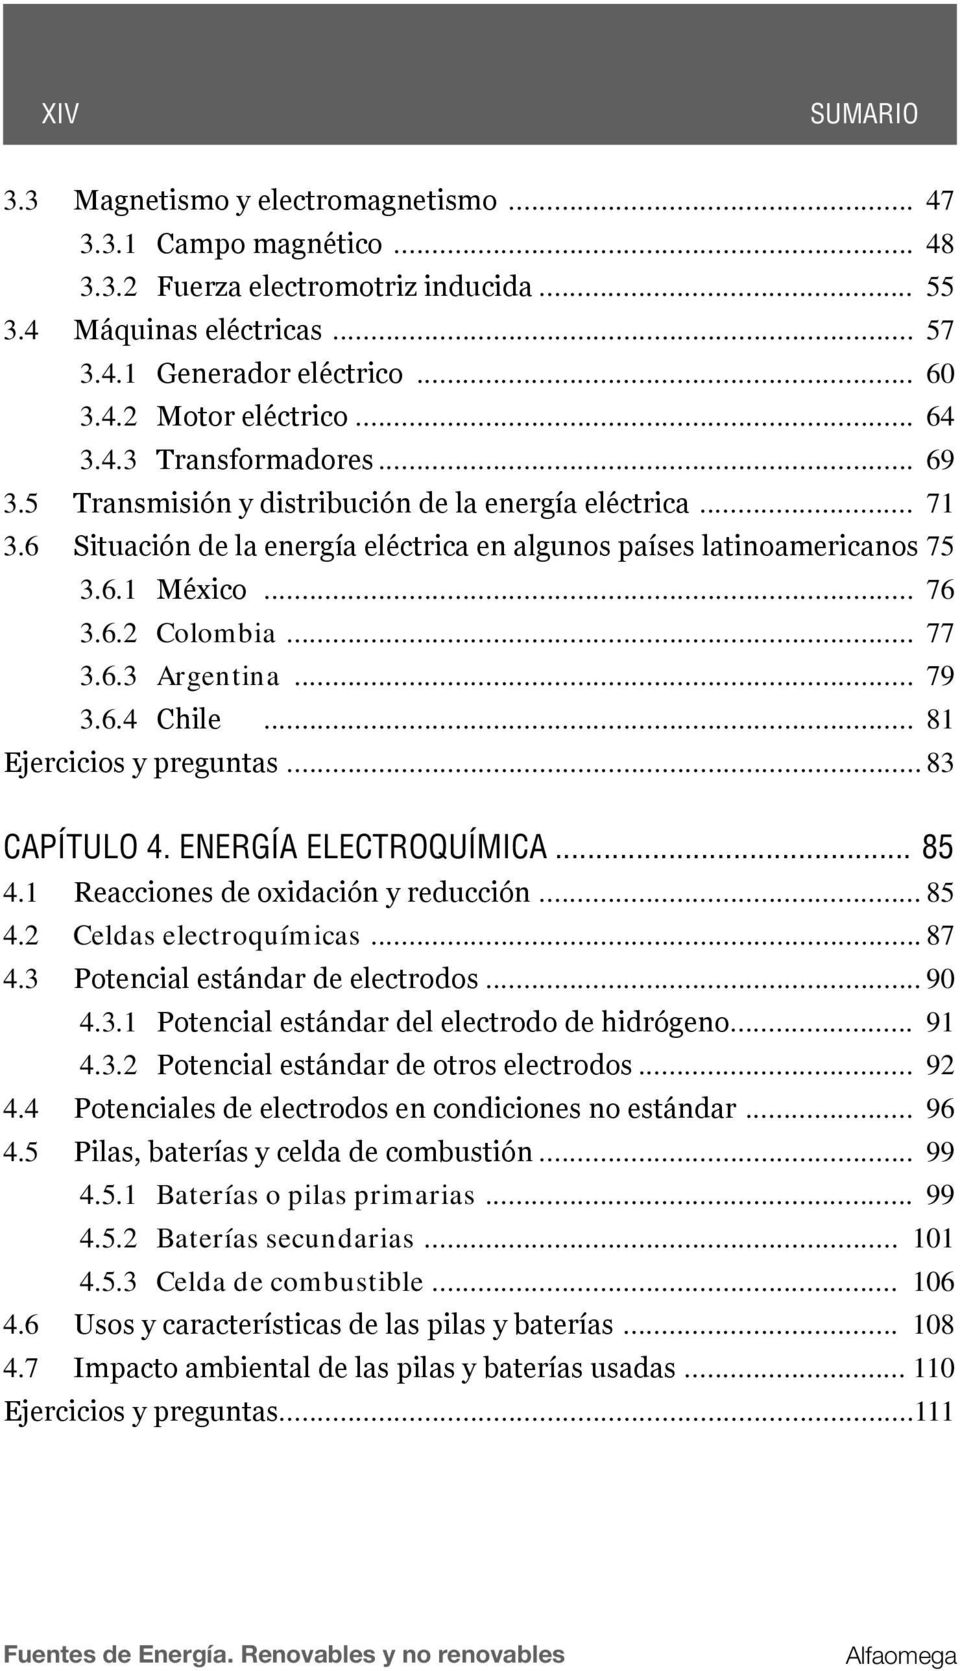 .. 77 3.6.3 Argentina... 79 3.6.4 Chile... 81 Ejercicios y preguntas... 83 CAPÍTULO 4. ENERGÍA ELECTROQUÍMICA... 85 4.1 Reacciones de oxidación y reducción... 85 4.2 Celdas electroquímicas... 87 4.